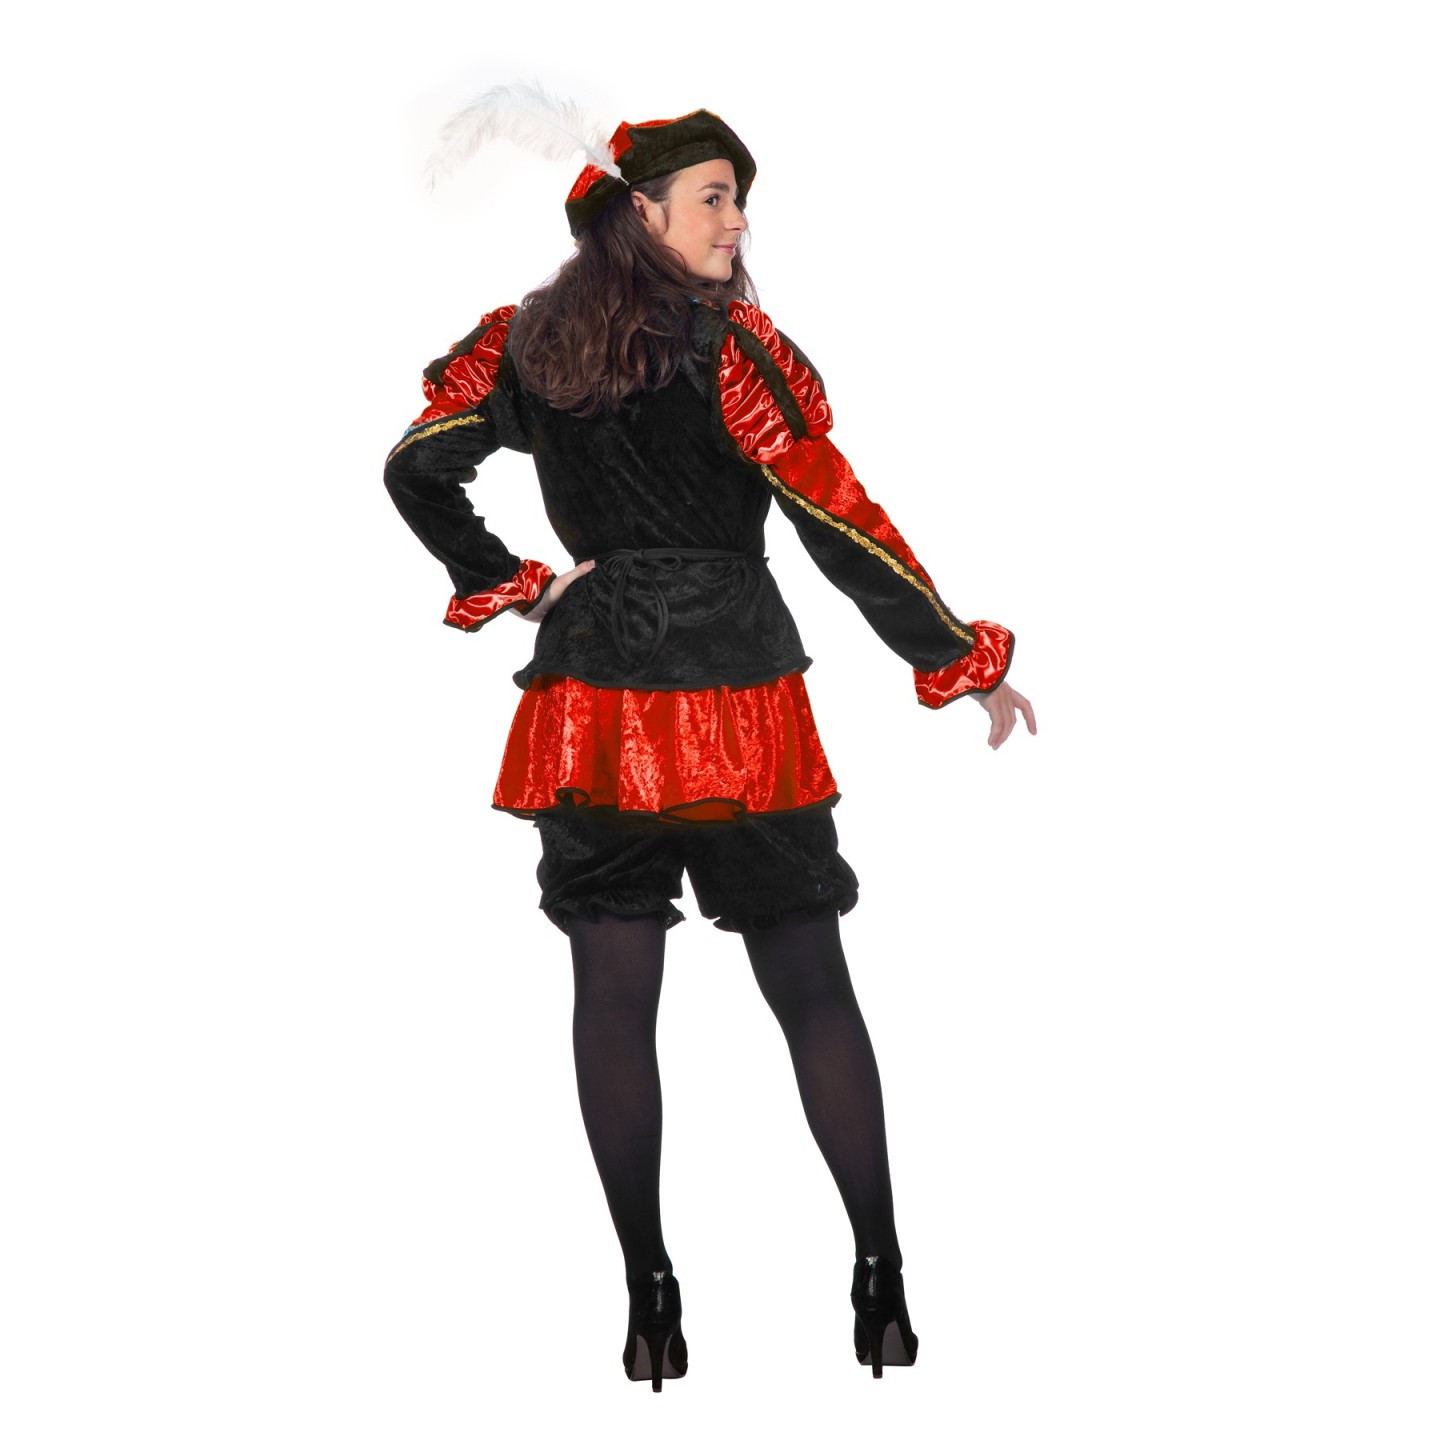 zeemijl Lift Mount Bank Zwarte pietenpak - dames Piet kostuum kopen ?| Jokershop.be